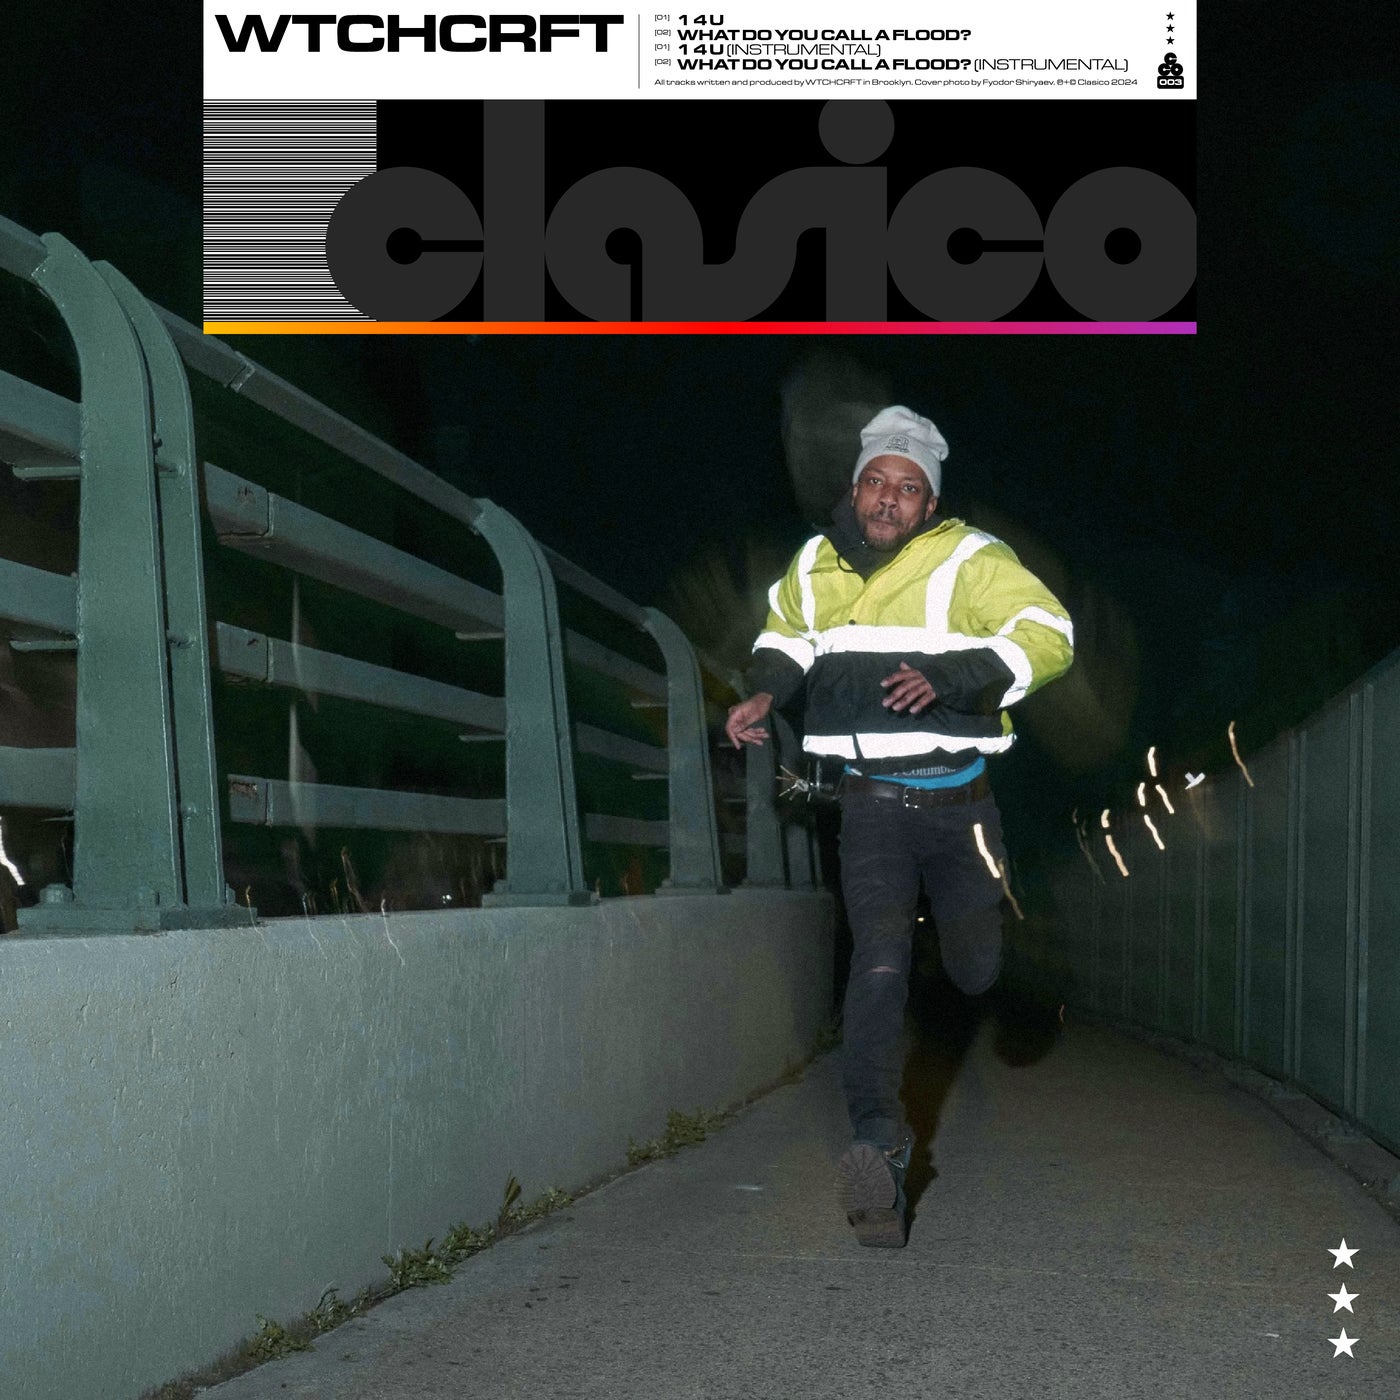 Cover - WTCHCRFT - 1 4 U (Original Mix)